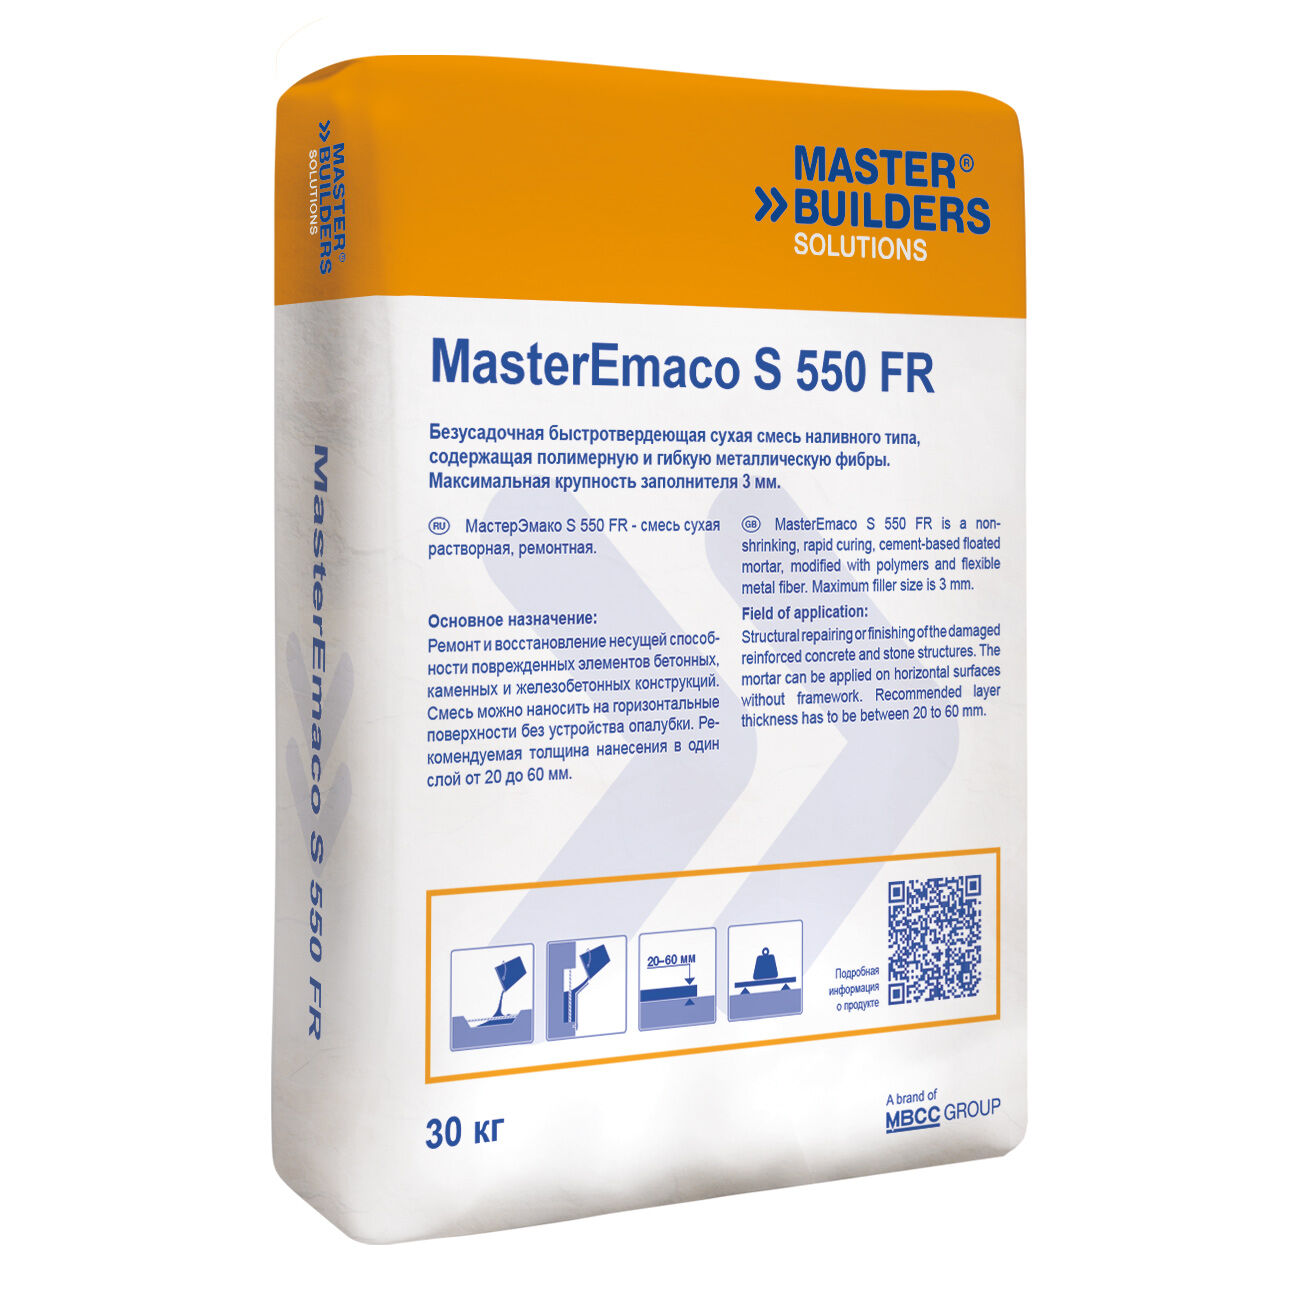 Ремонтная смесь MasterEmaco S 550 FR (EMACO S150 СFR) Наливной тип. Толщина заливки от 2 до 6 см